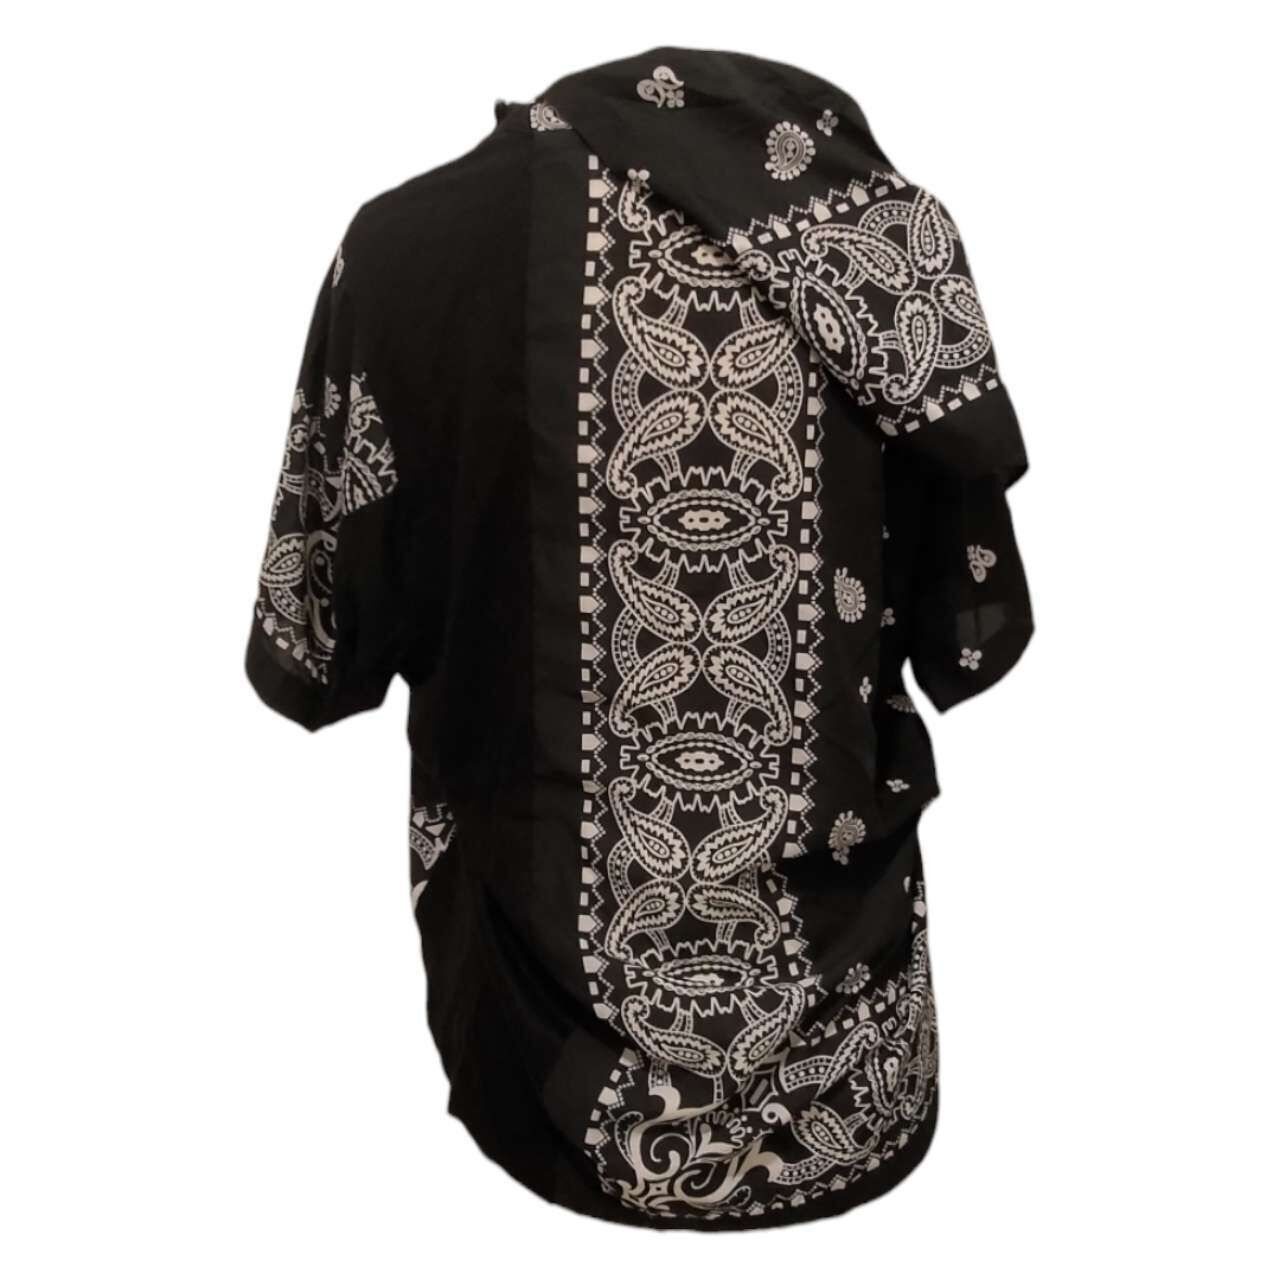 Sacai Black & White Paisley Short Sleeve Shirt